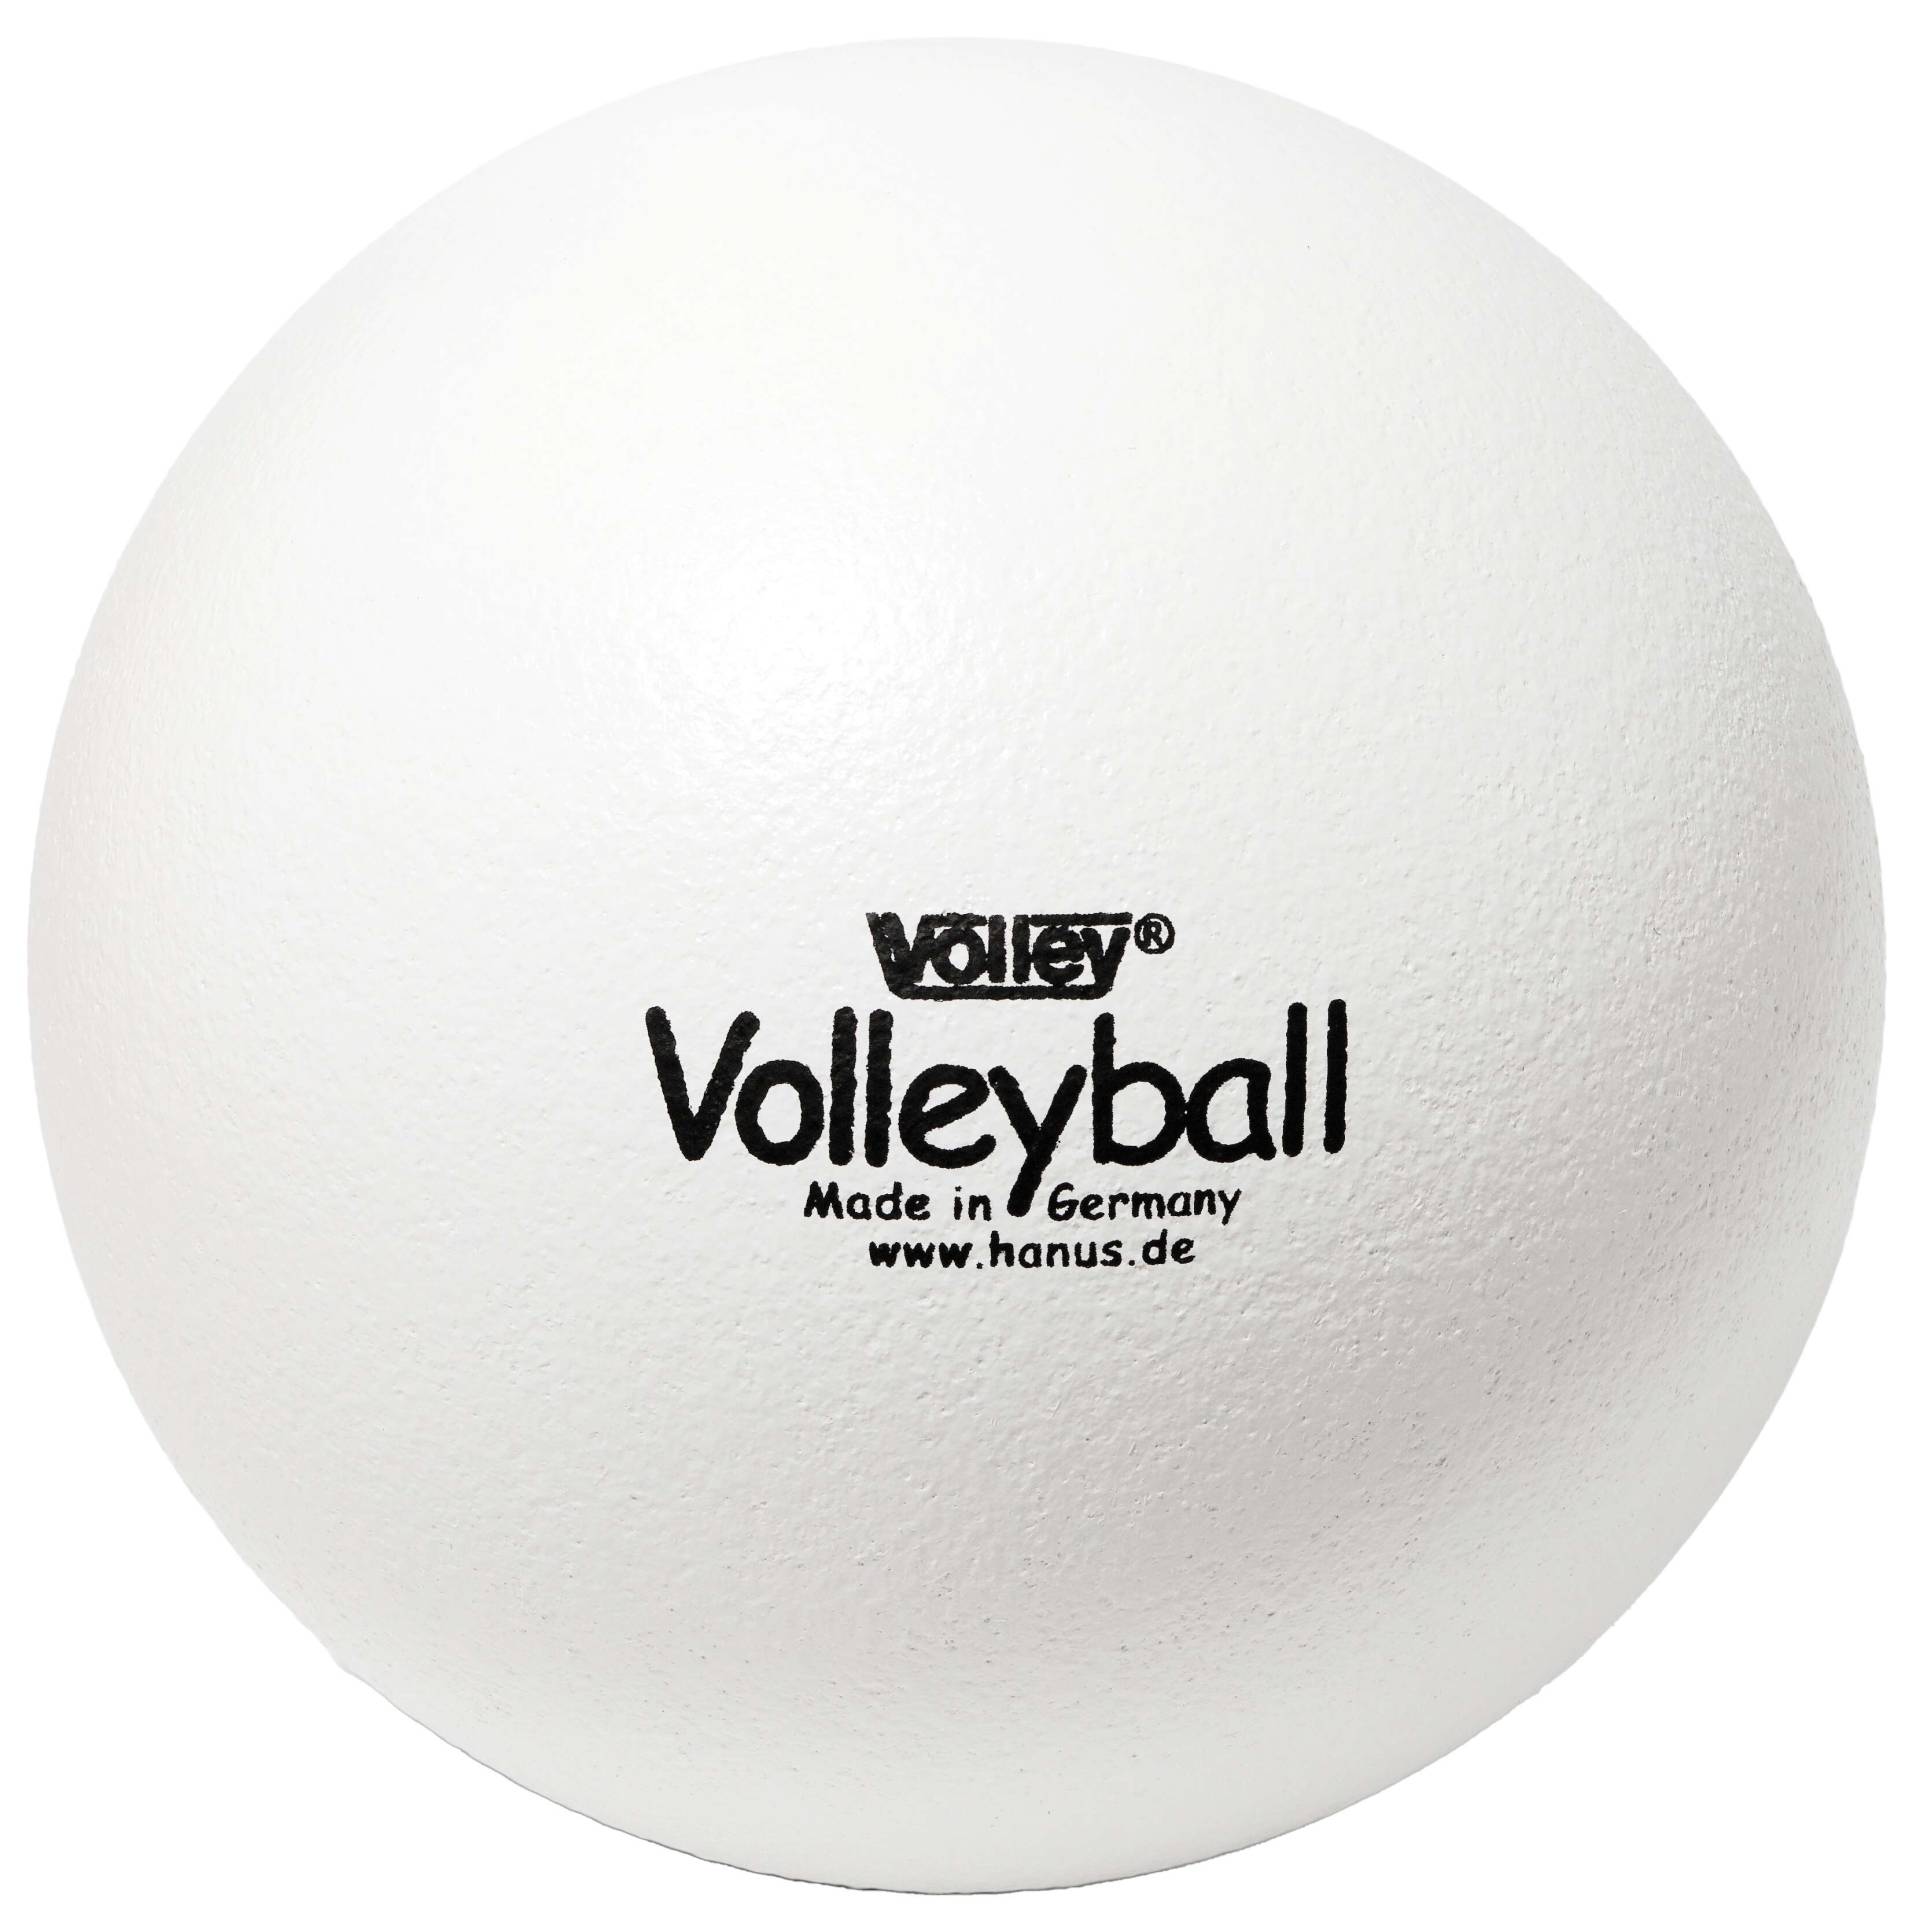 Volley Weichschaumball "Volleyball", 325 g von Volley